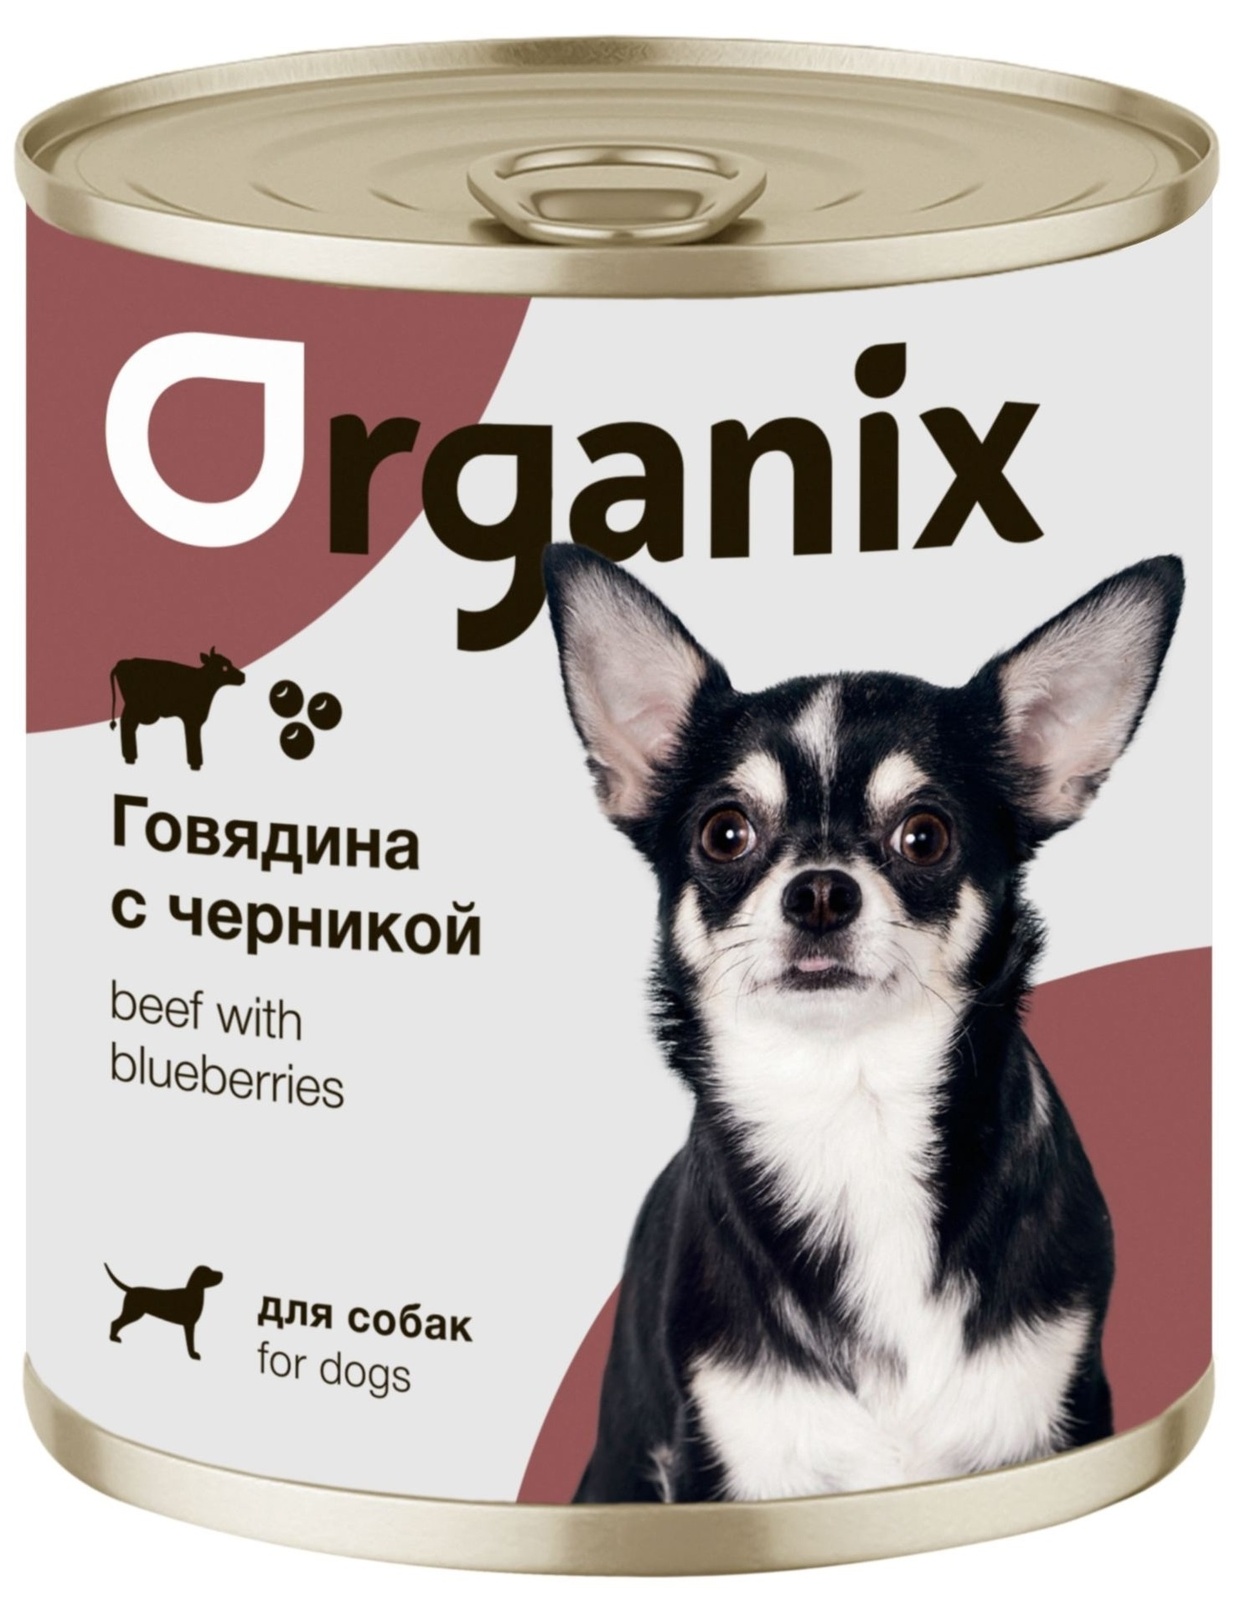 Organix консервы Organix консервы для собак Заливное из говядины с черникой (400 г) organix консервы organix монобелковые премиум консервы для собак с гусем 400 г